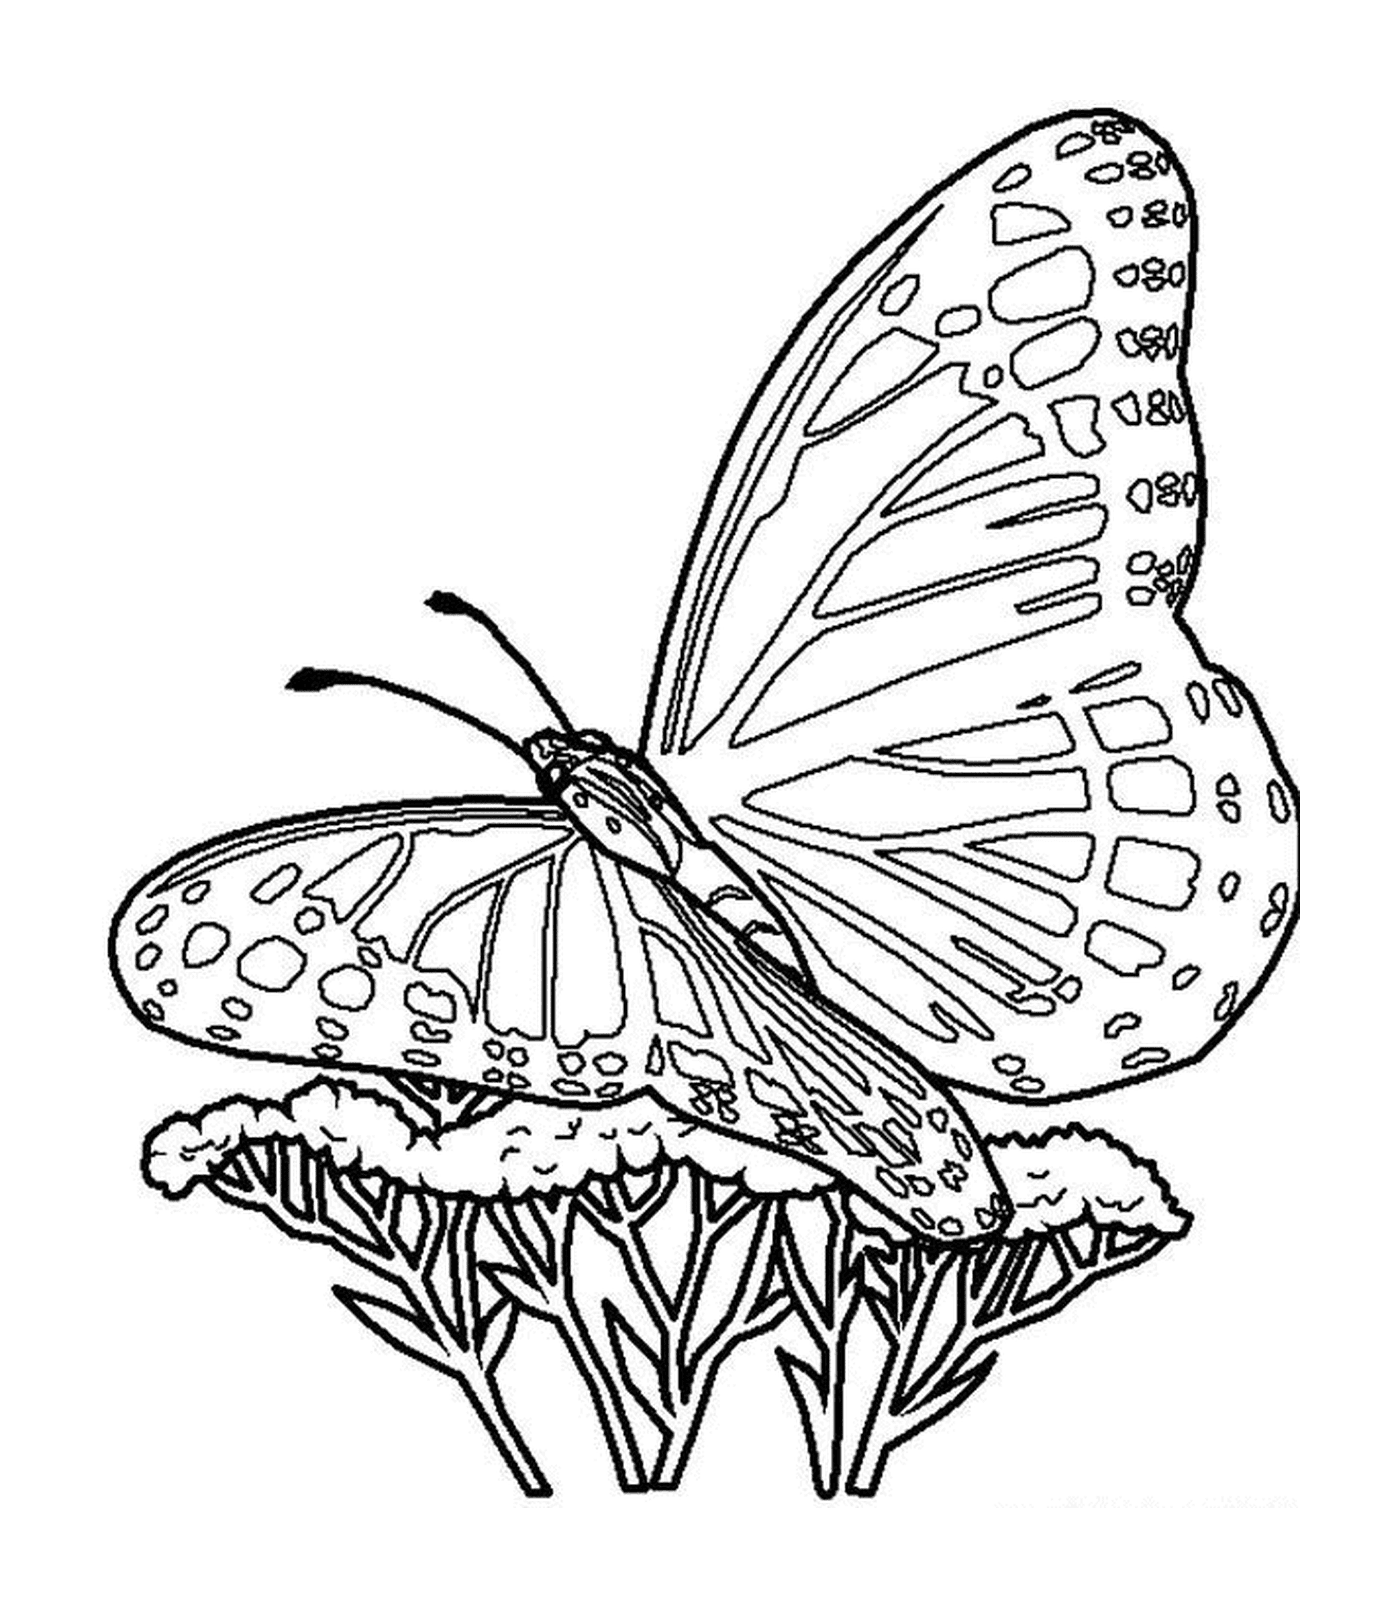  Ein Schmetterling auf einer Blume 